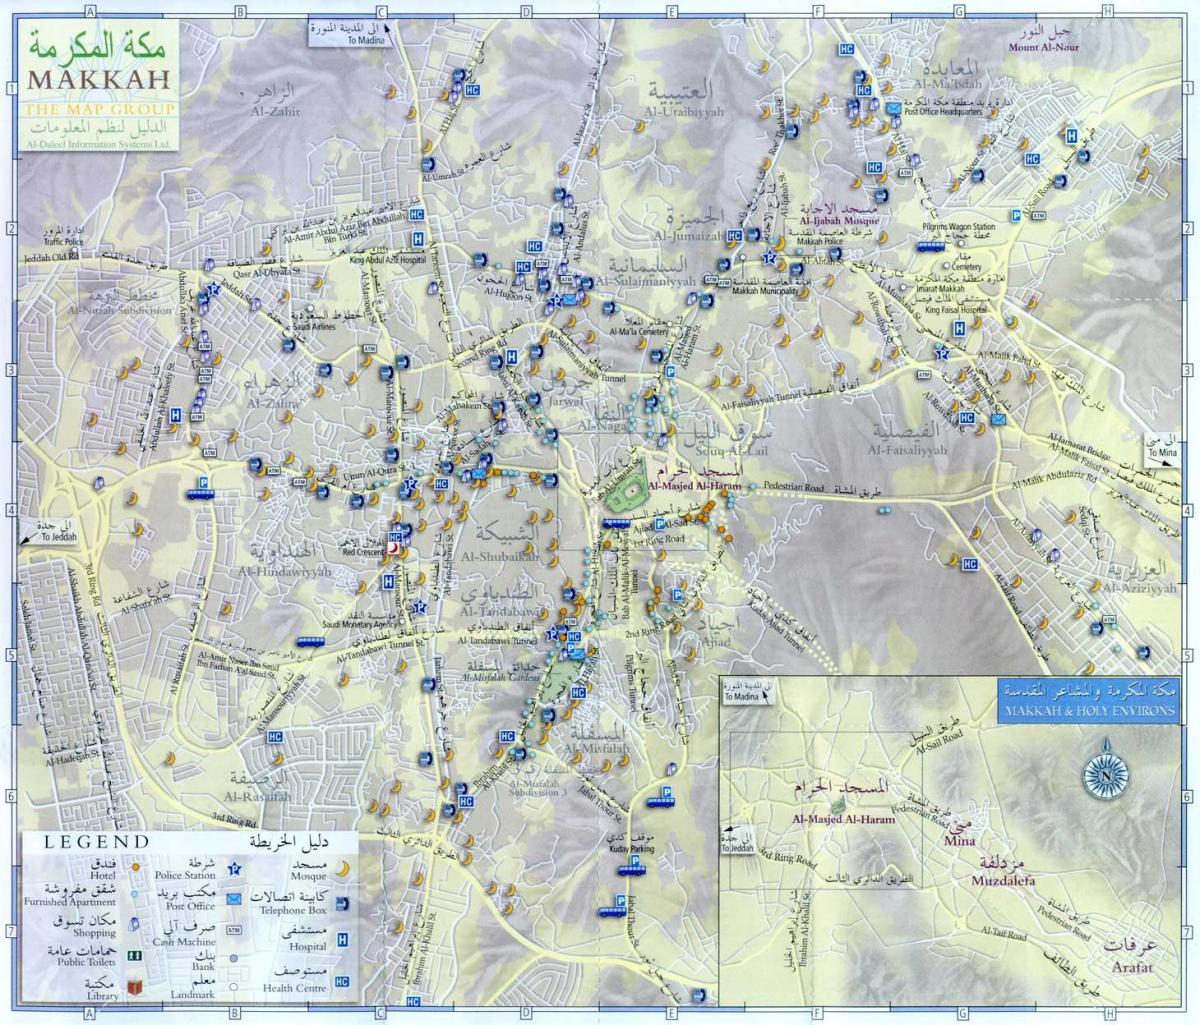  kort af Makkah ziyarat steder